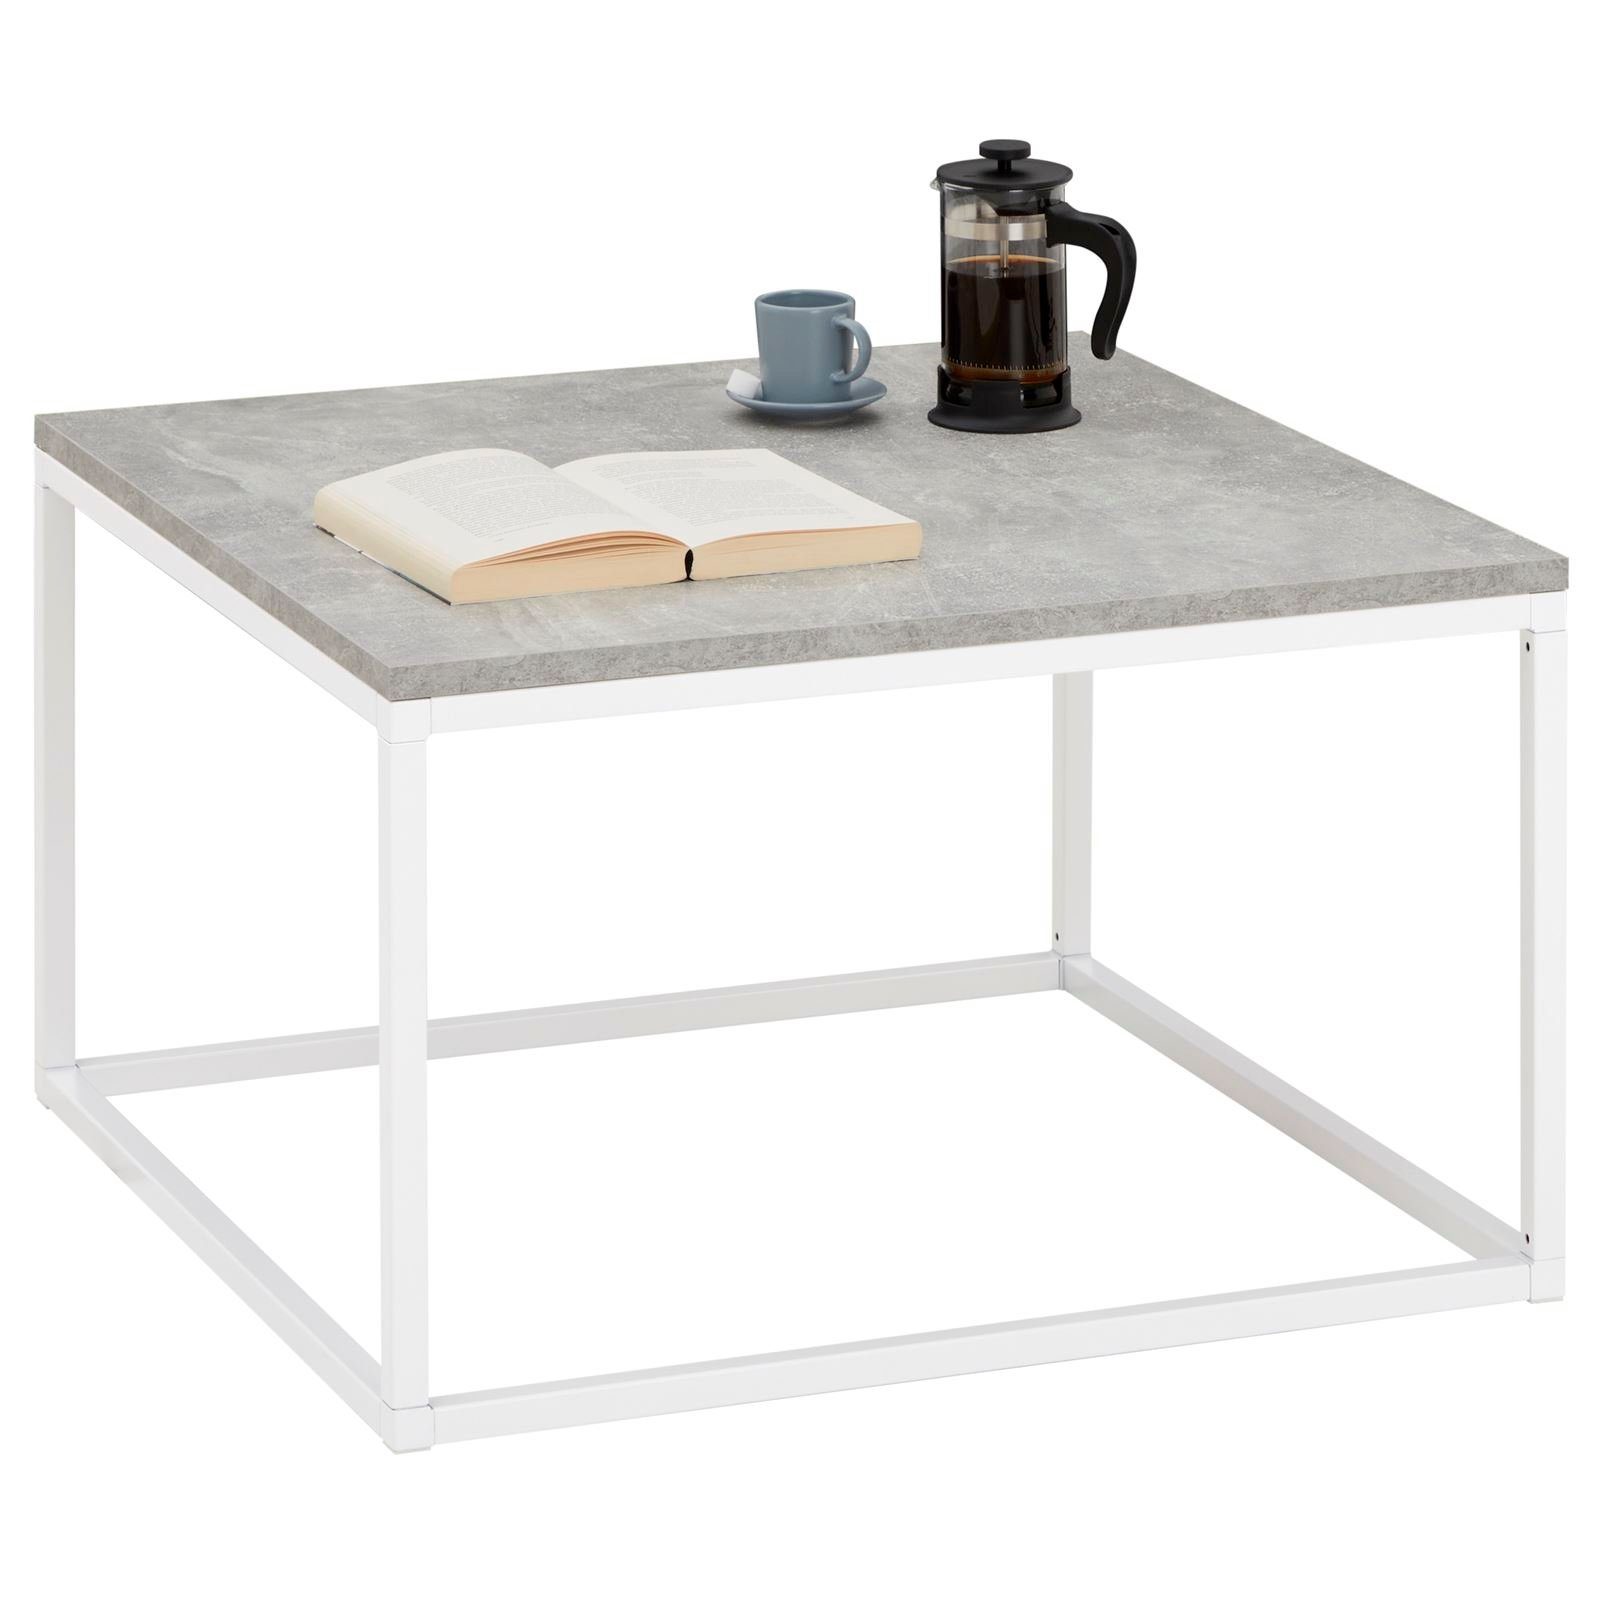 CARO-Möbel Couchtisch NOVY, Couchtisch Beistell Tisch Industrial design 67 x 67 cm, Betonoptik/wei Betonoptik/weiß